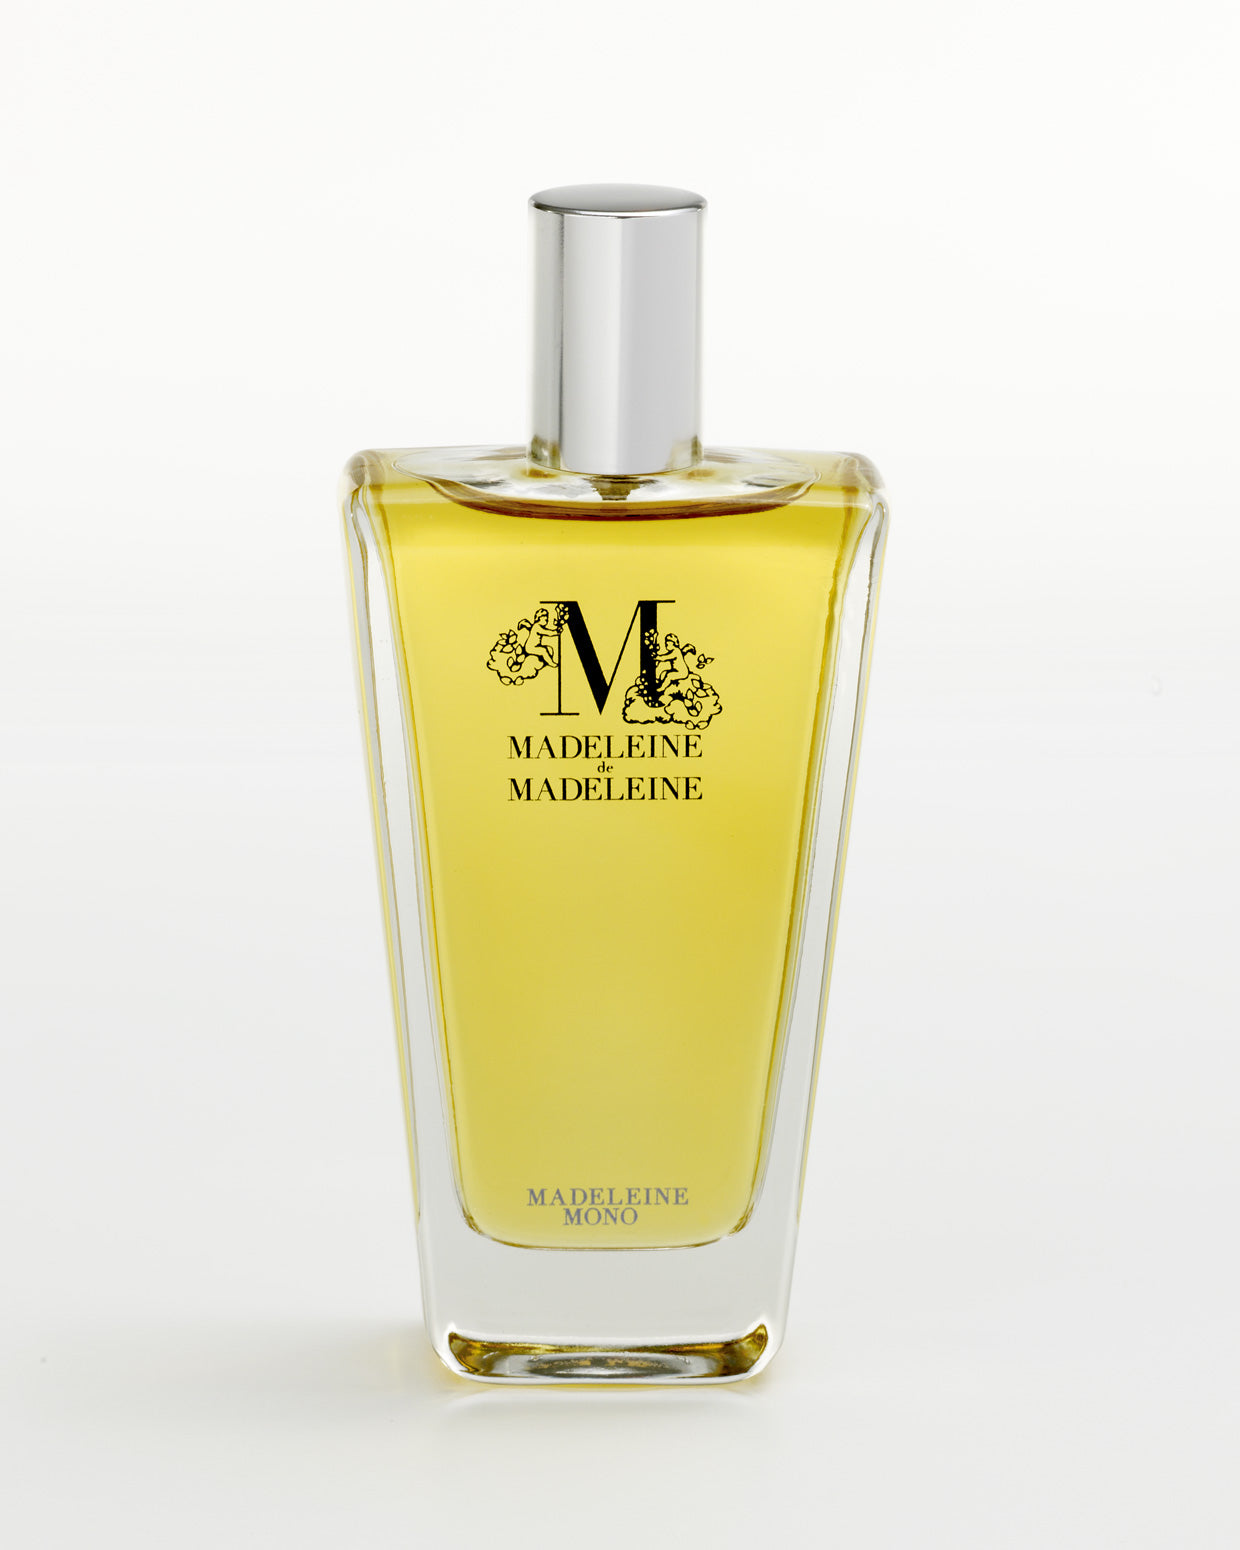 Madeleine Mono Madeleine de Madeleine Perfum